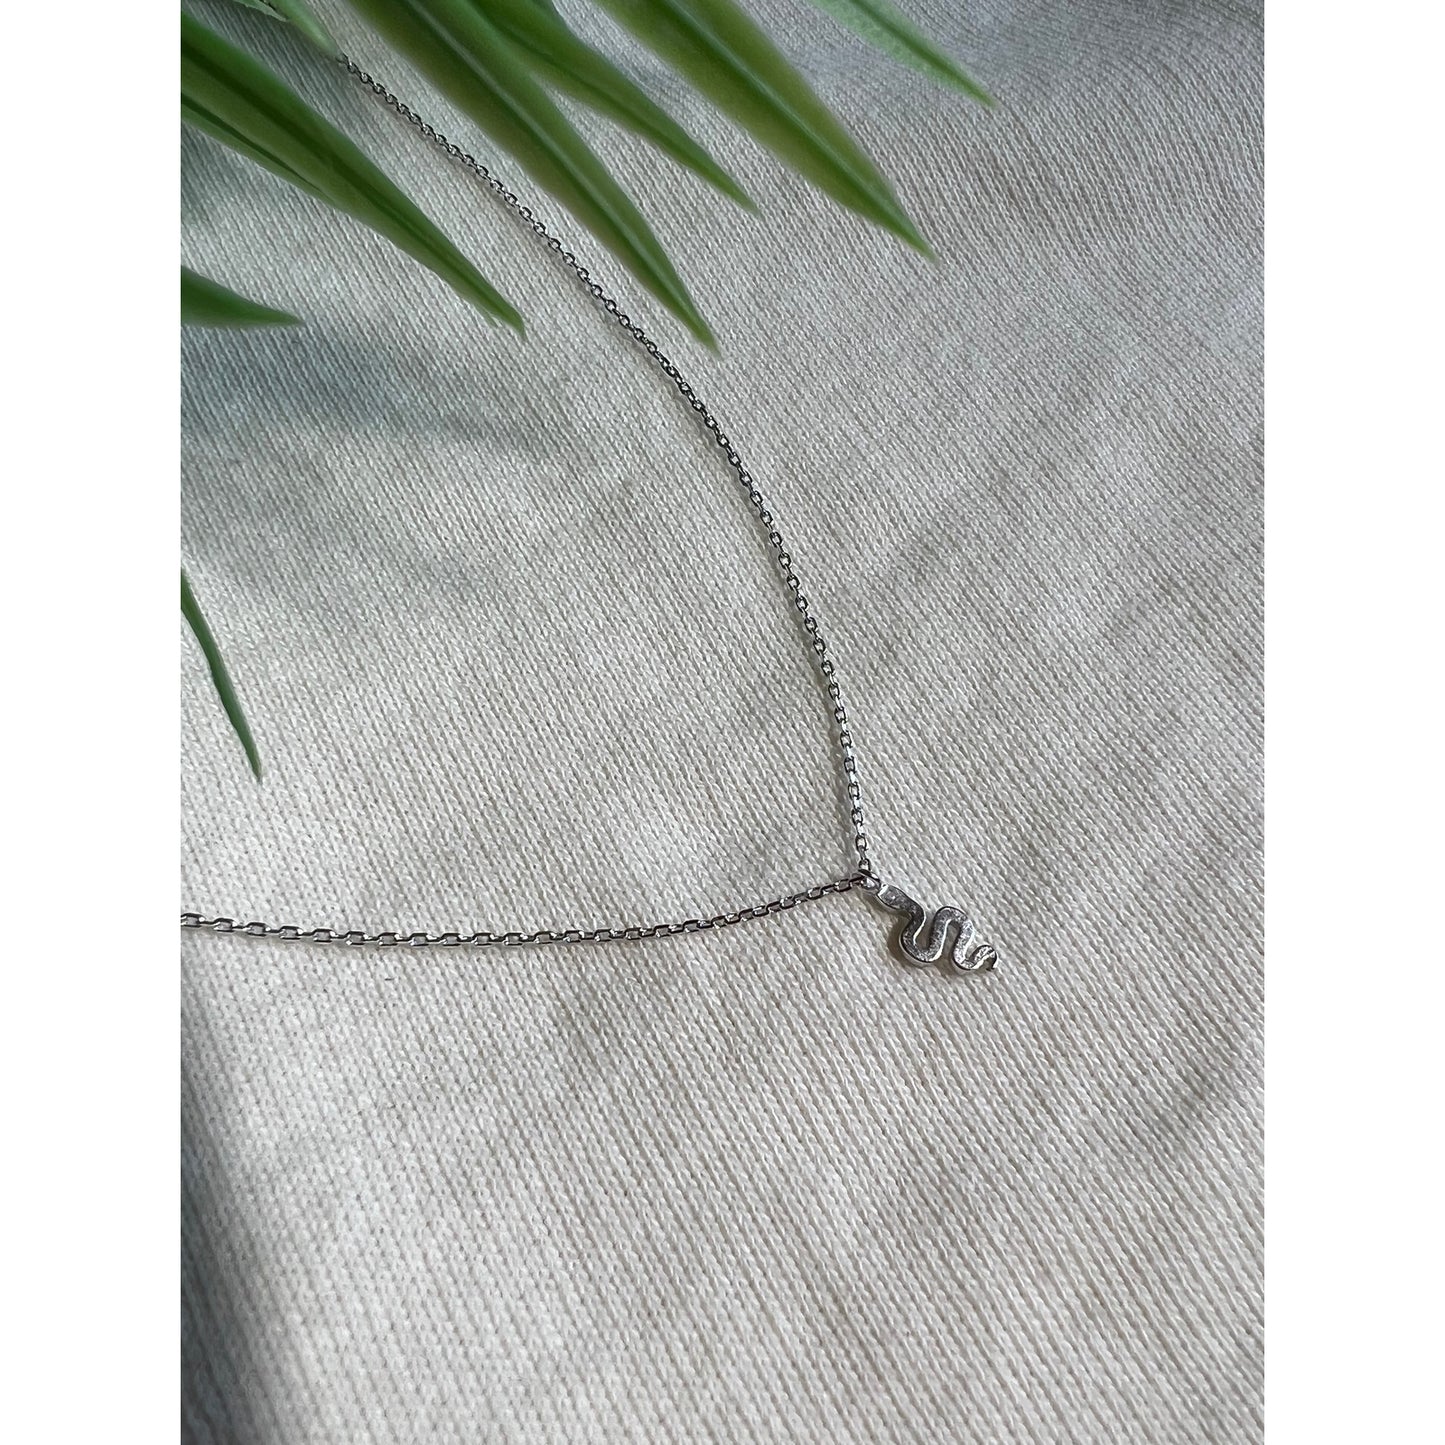 Petite Snake Necklace